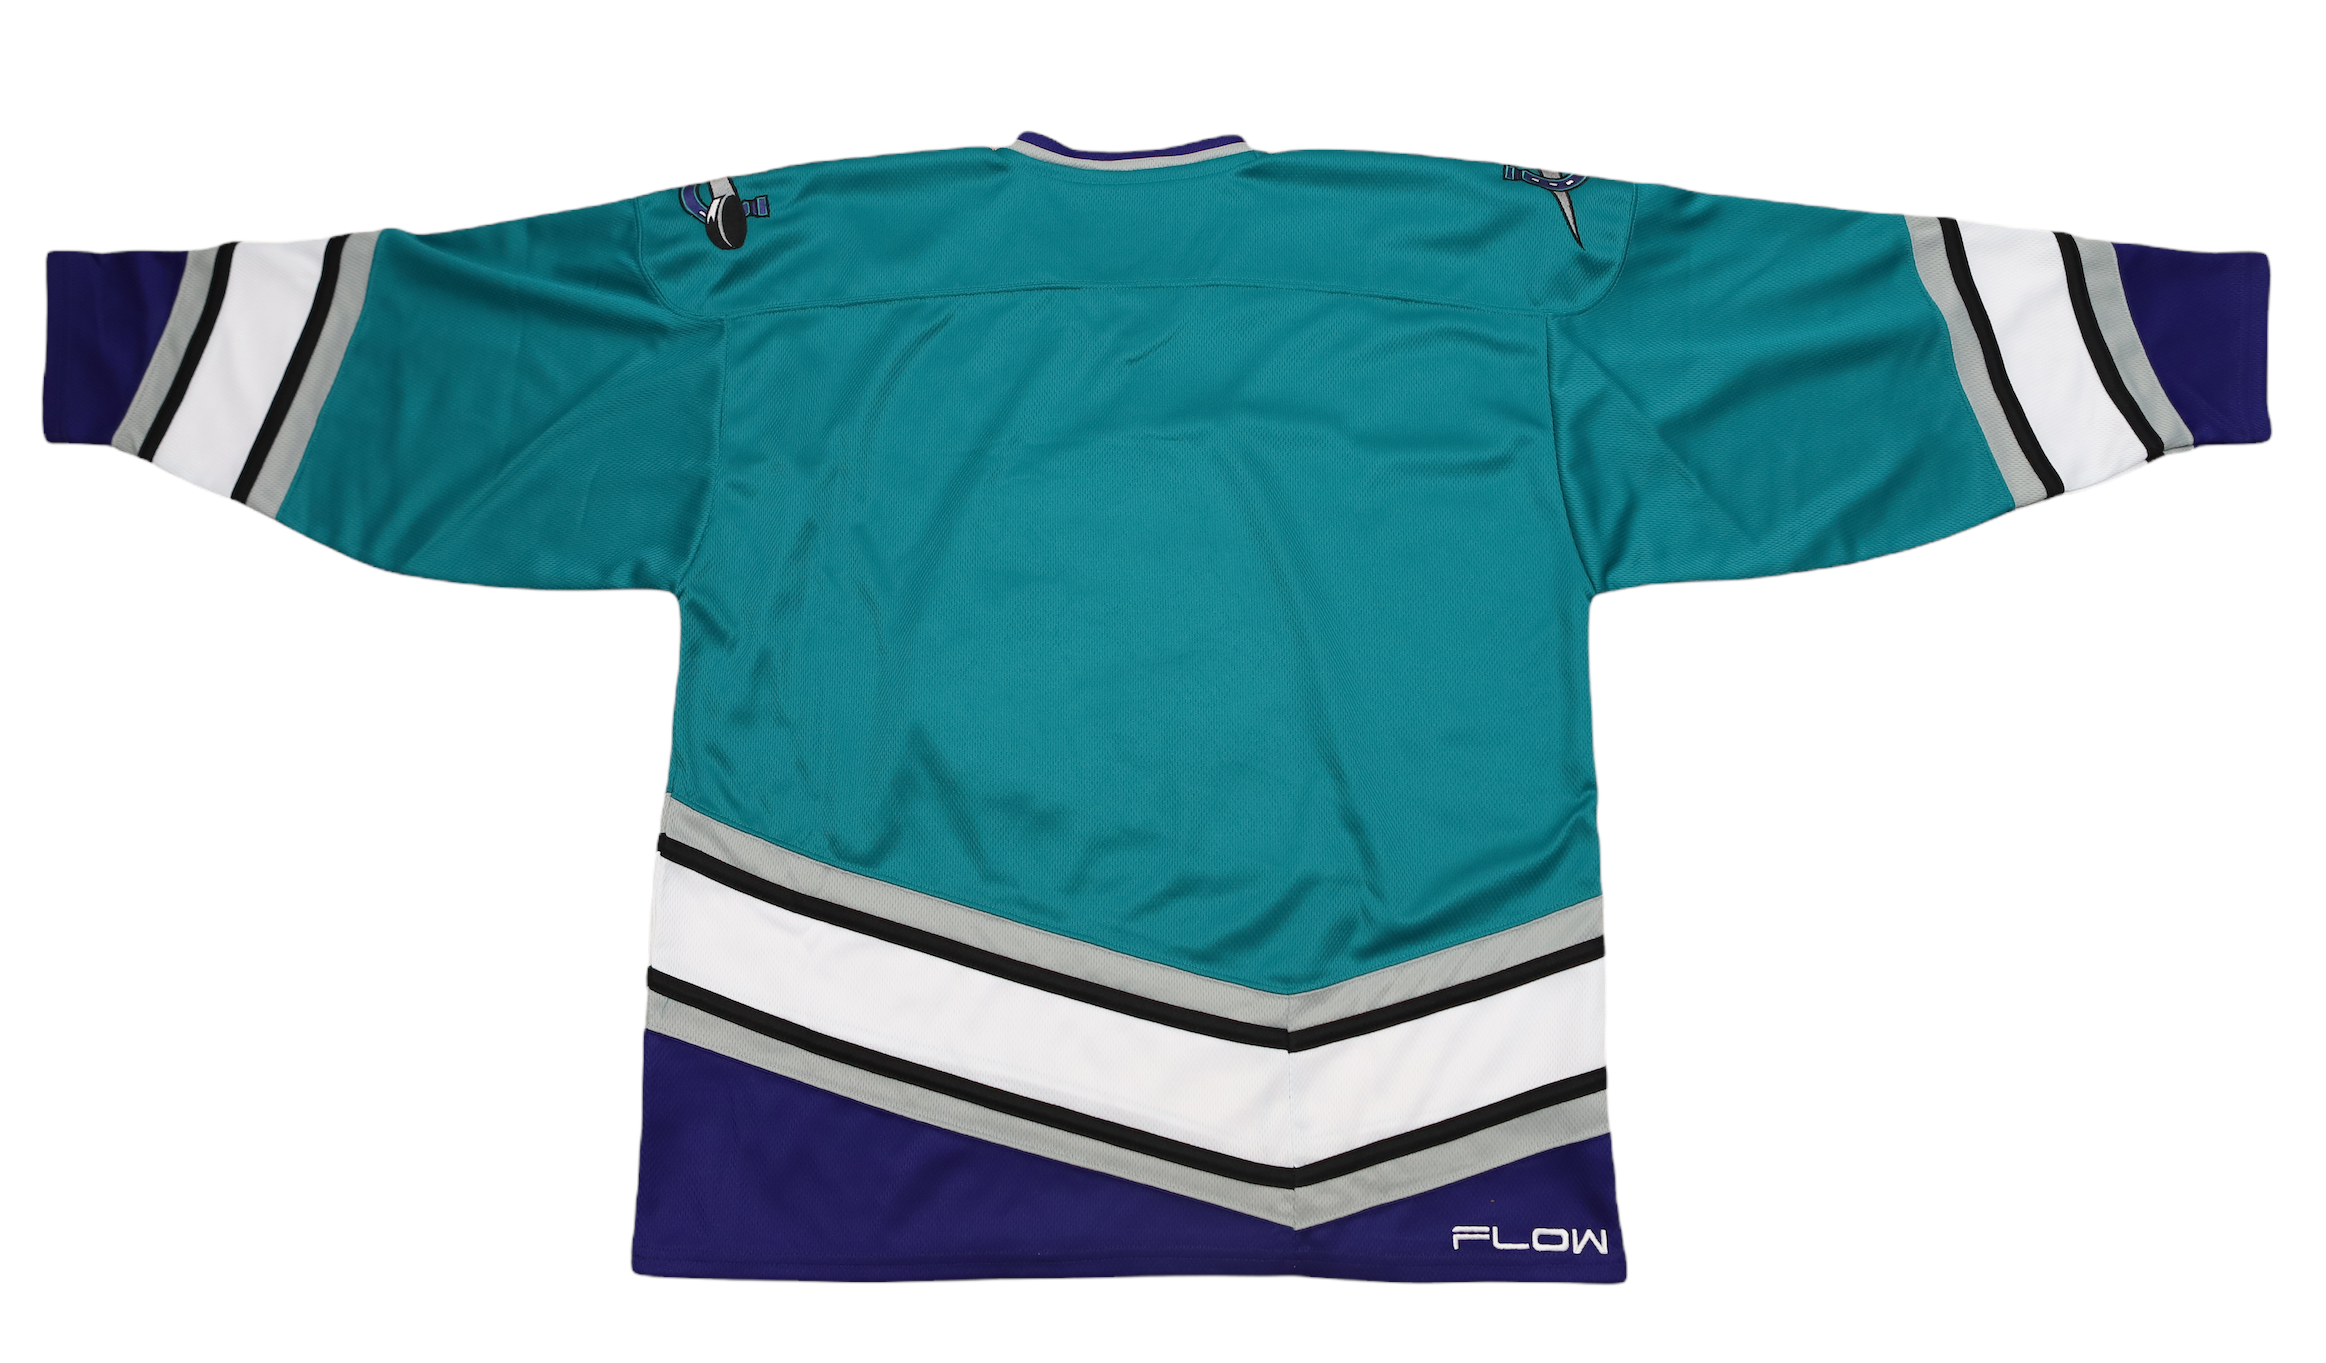 Mighty Ducks Ice Hockey Jersey, Men's Fashion, Coats, Jackets and